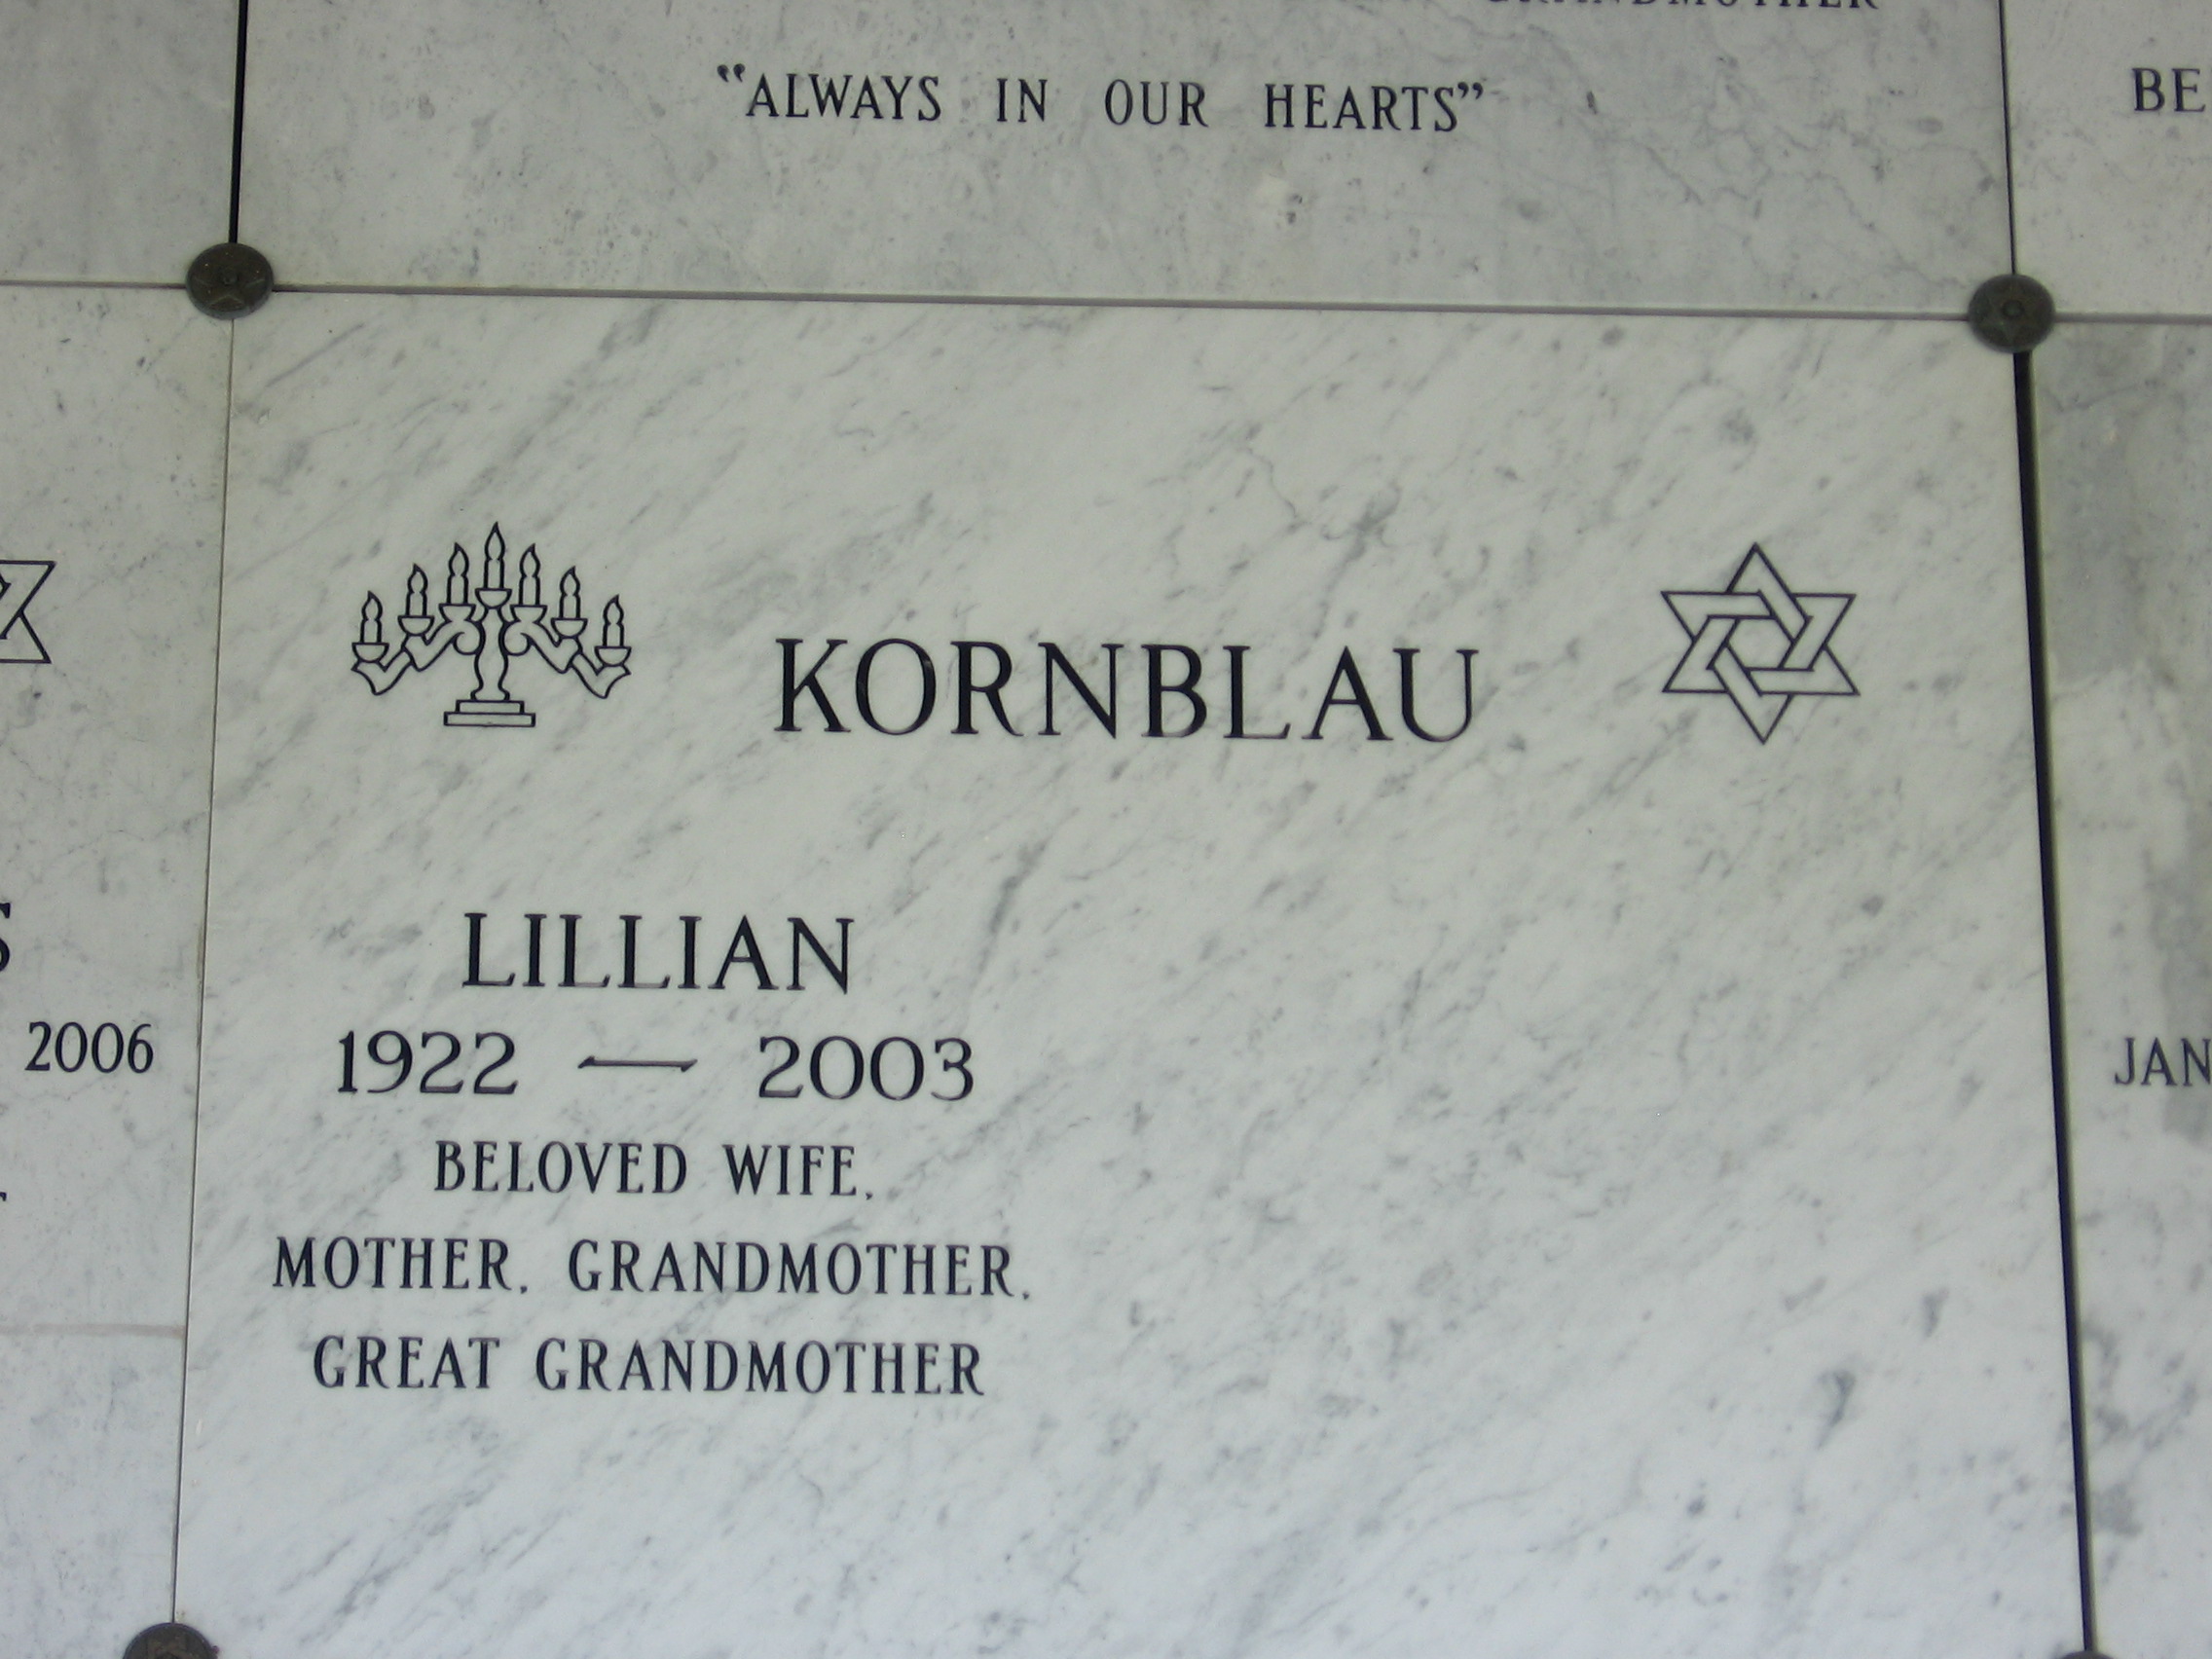 Lillian Kornblau